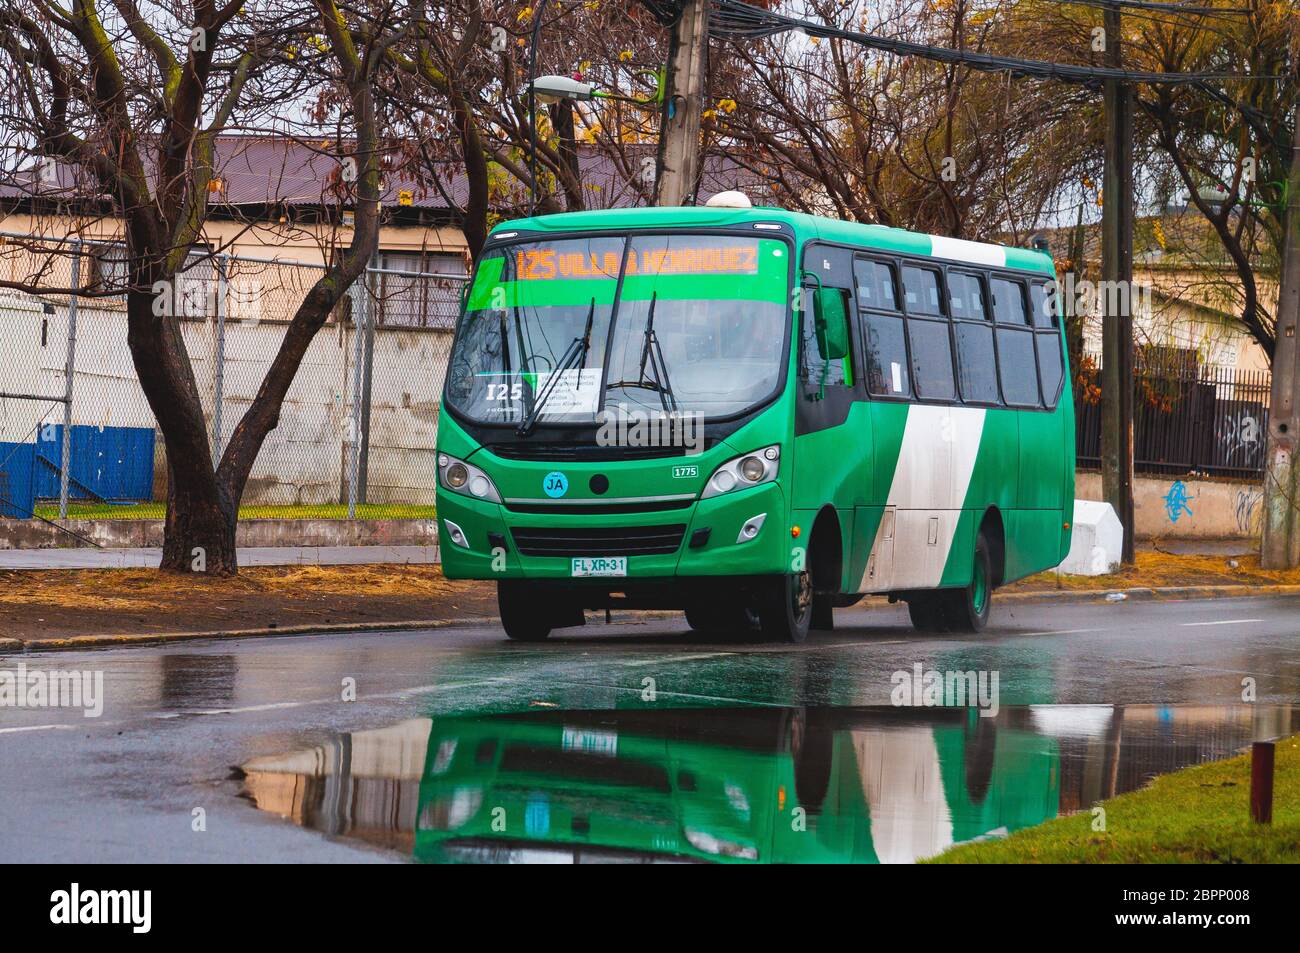 SANTIAGO, CILE - 2019 GIUGNO: Un autobus Transantiago durante una giornata piovosa a Cerrillos Foto Stock